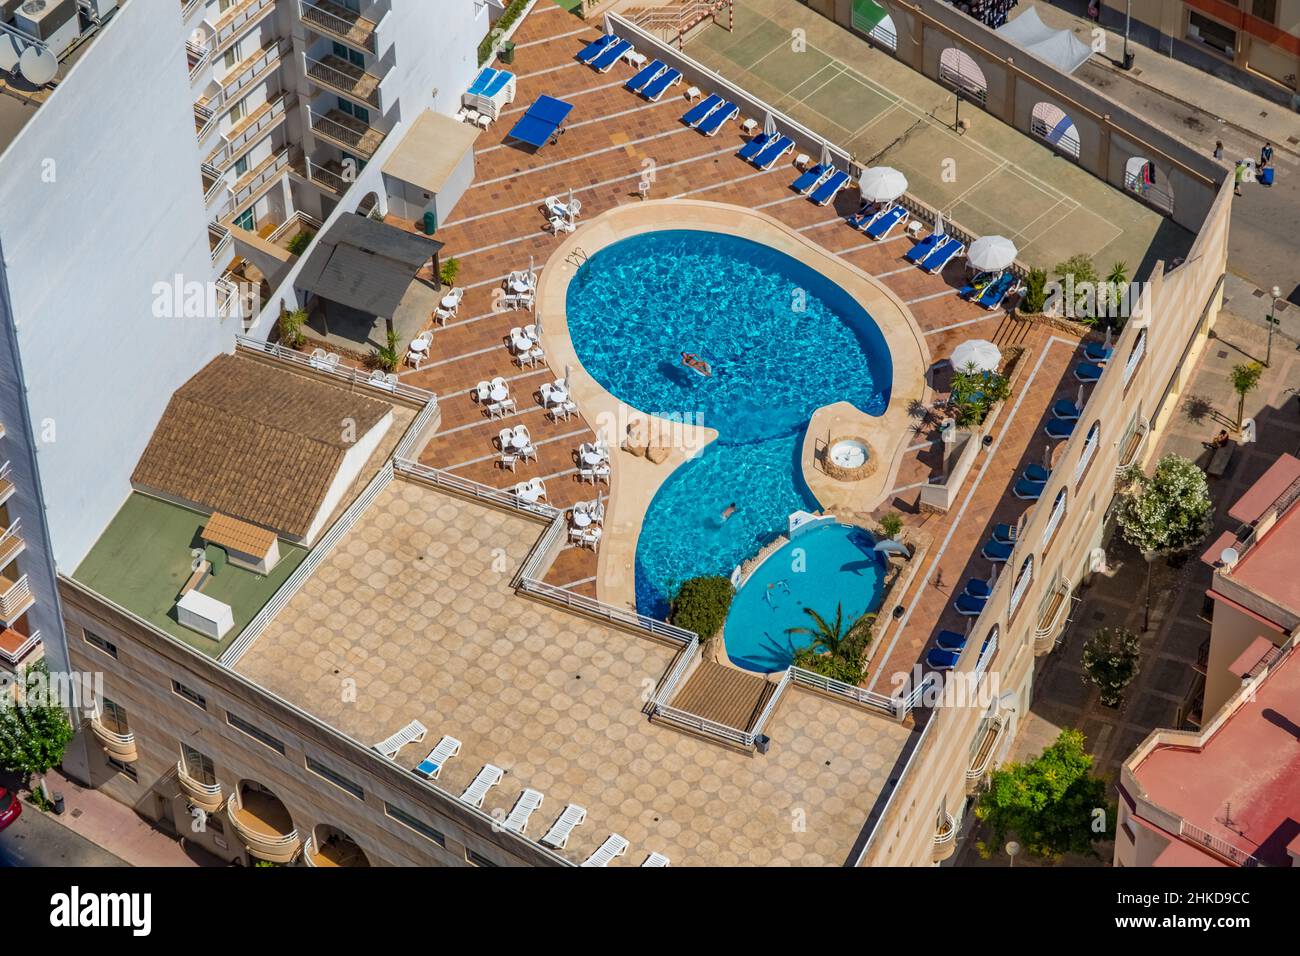 Vue aérienne, piscine sur le toit de l'hôtel Hotel Kilimanjaro, Majorque, Iles Baléares, Espagne, ES,Europe, femme en piscine, hôtel, équipements de l'hôtel, chaud Banque D'Images